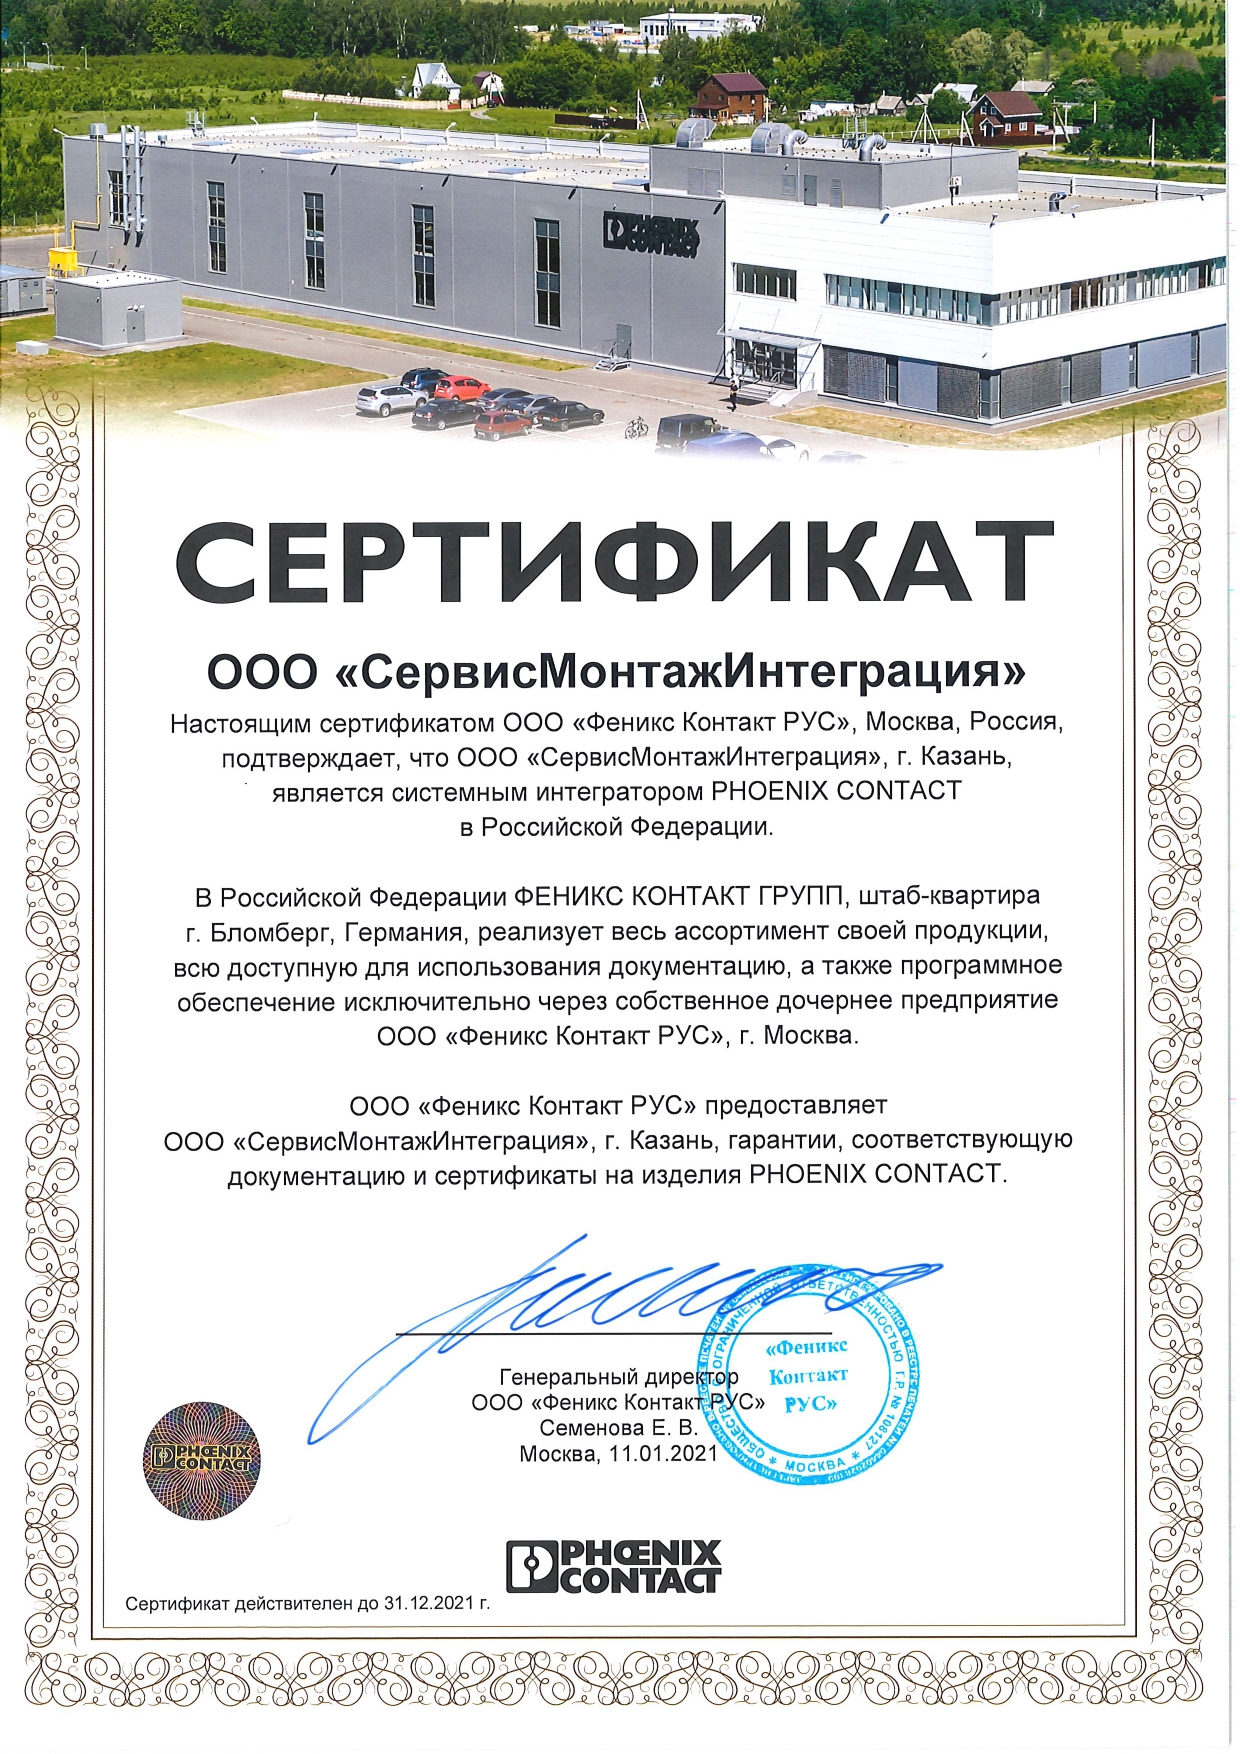 Сертификат от компании ООО «Феникс Контакт РУС»